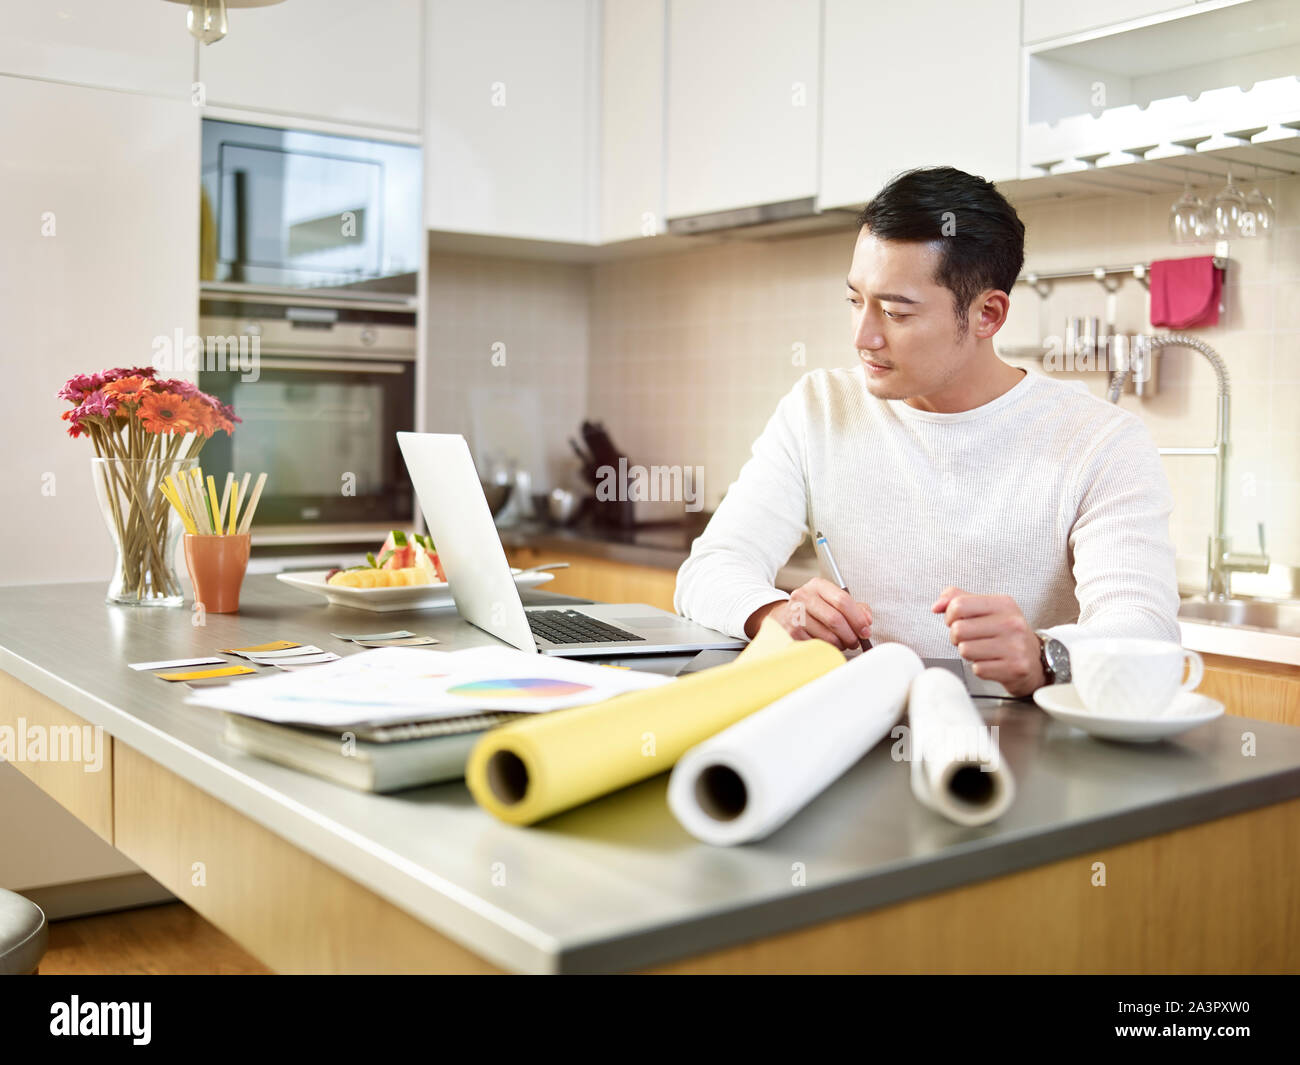 Giovani asiatici free lance designer seduti al bancone cucina creando un progetto utilizzando la pen tablet e computer laptop. Foto Stock